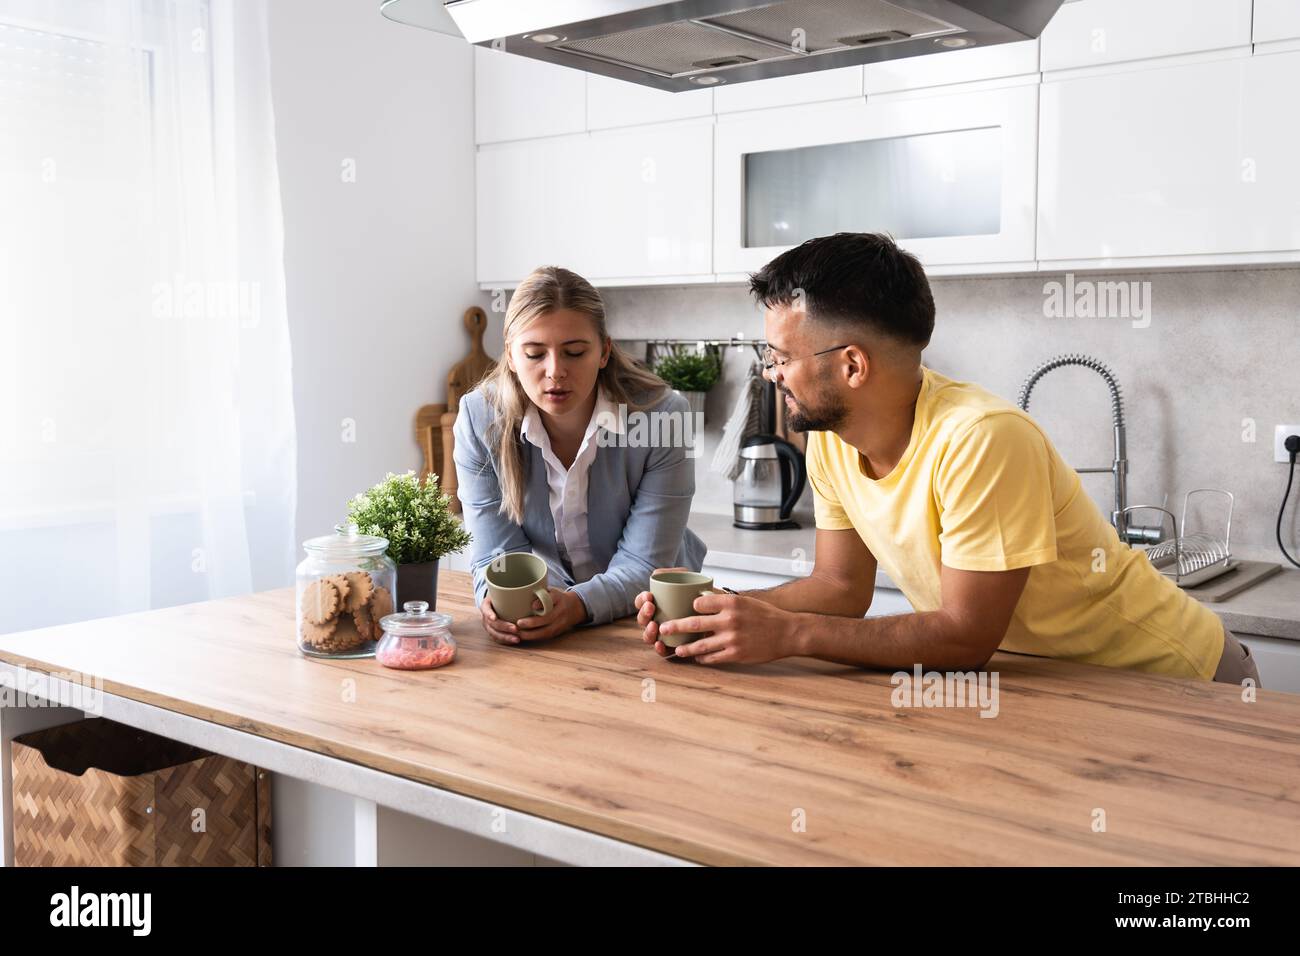 Kleine Gespräche. Mann und Frau stehen in der Küche und plaudern, während sie Kaffee trinken, nachdem die Frau von ihrem Arbeitsplatz nach Hause zurückgekommen ist. Businesswom Stockfoto